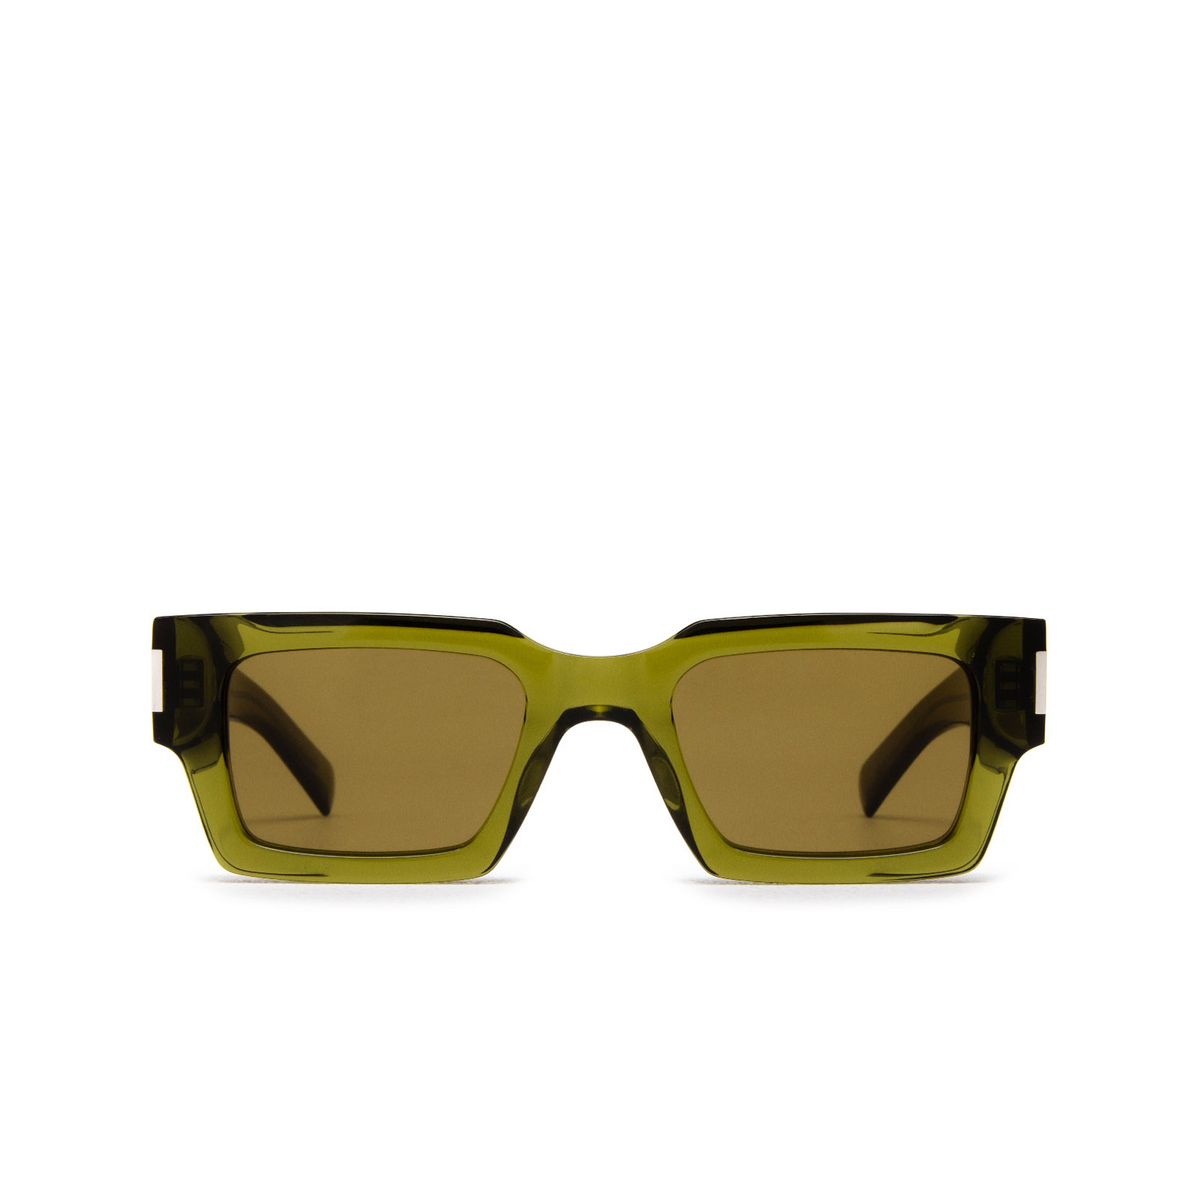 Saint Laurent SL 572 Sunglasses 005 Green - front view